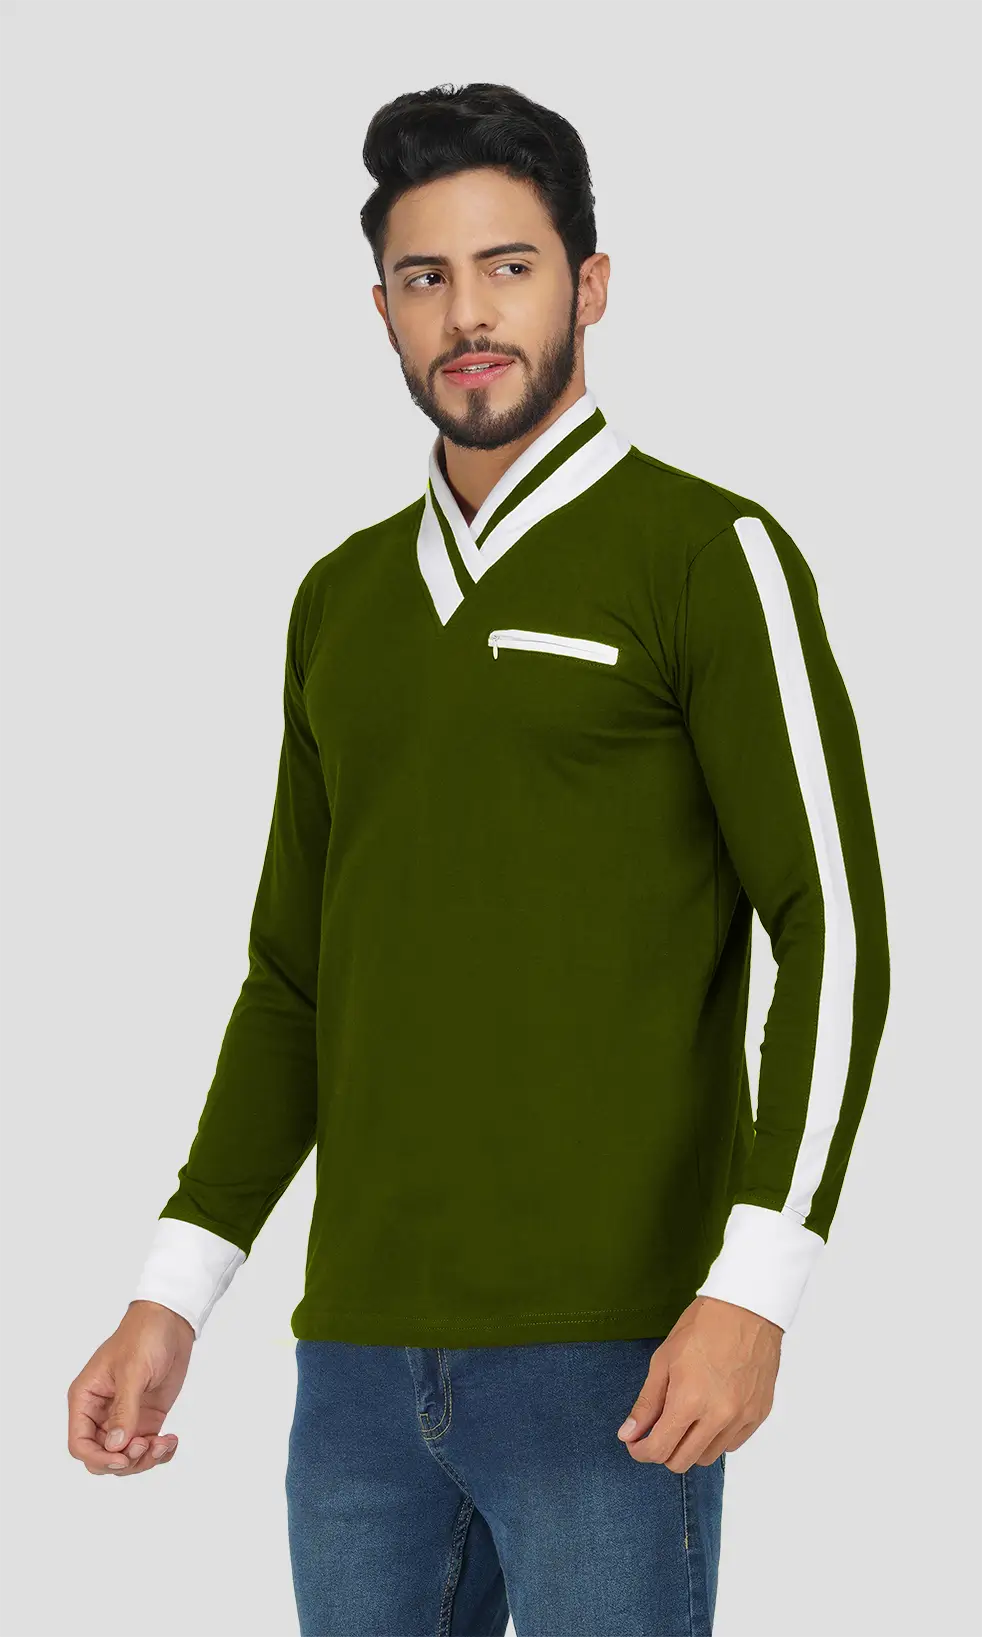 Mebadass Men's Fullsleeve Colorblocked Regular Size T-shirt - Olive White